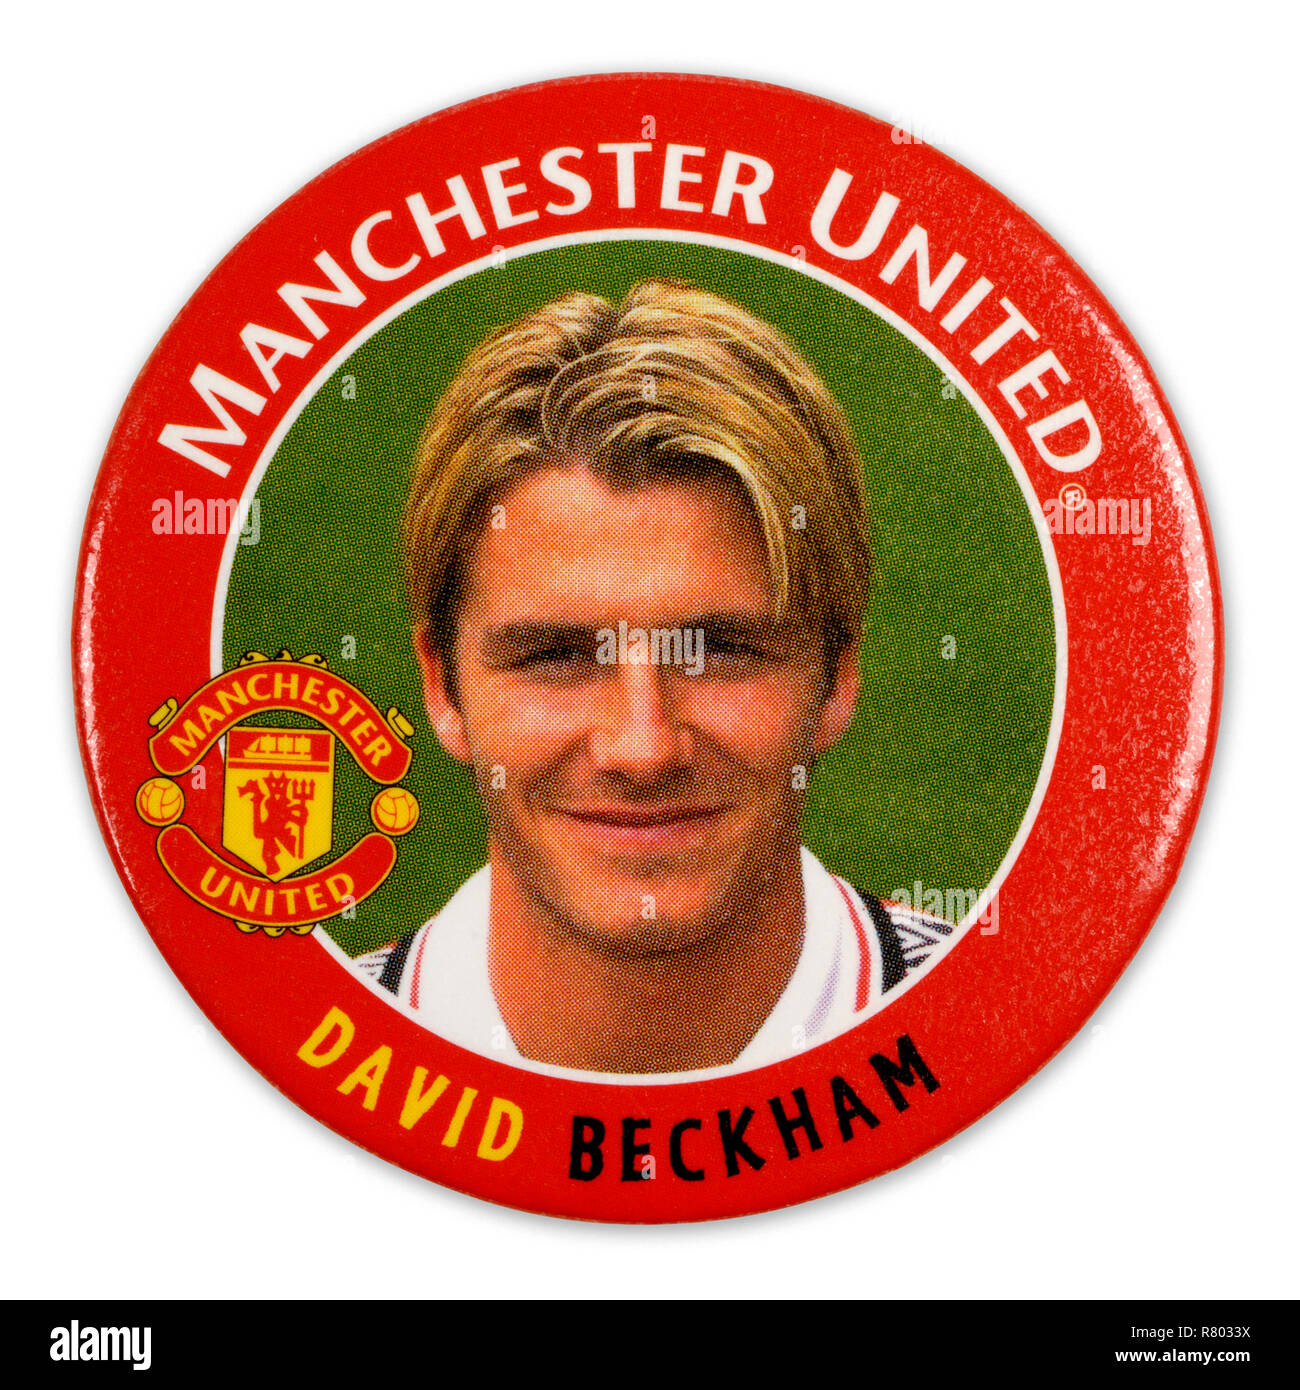 Pin's badge métal des années 1990 avec David Beckham jouer pour Manchester United Banque D'Images